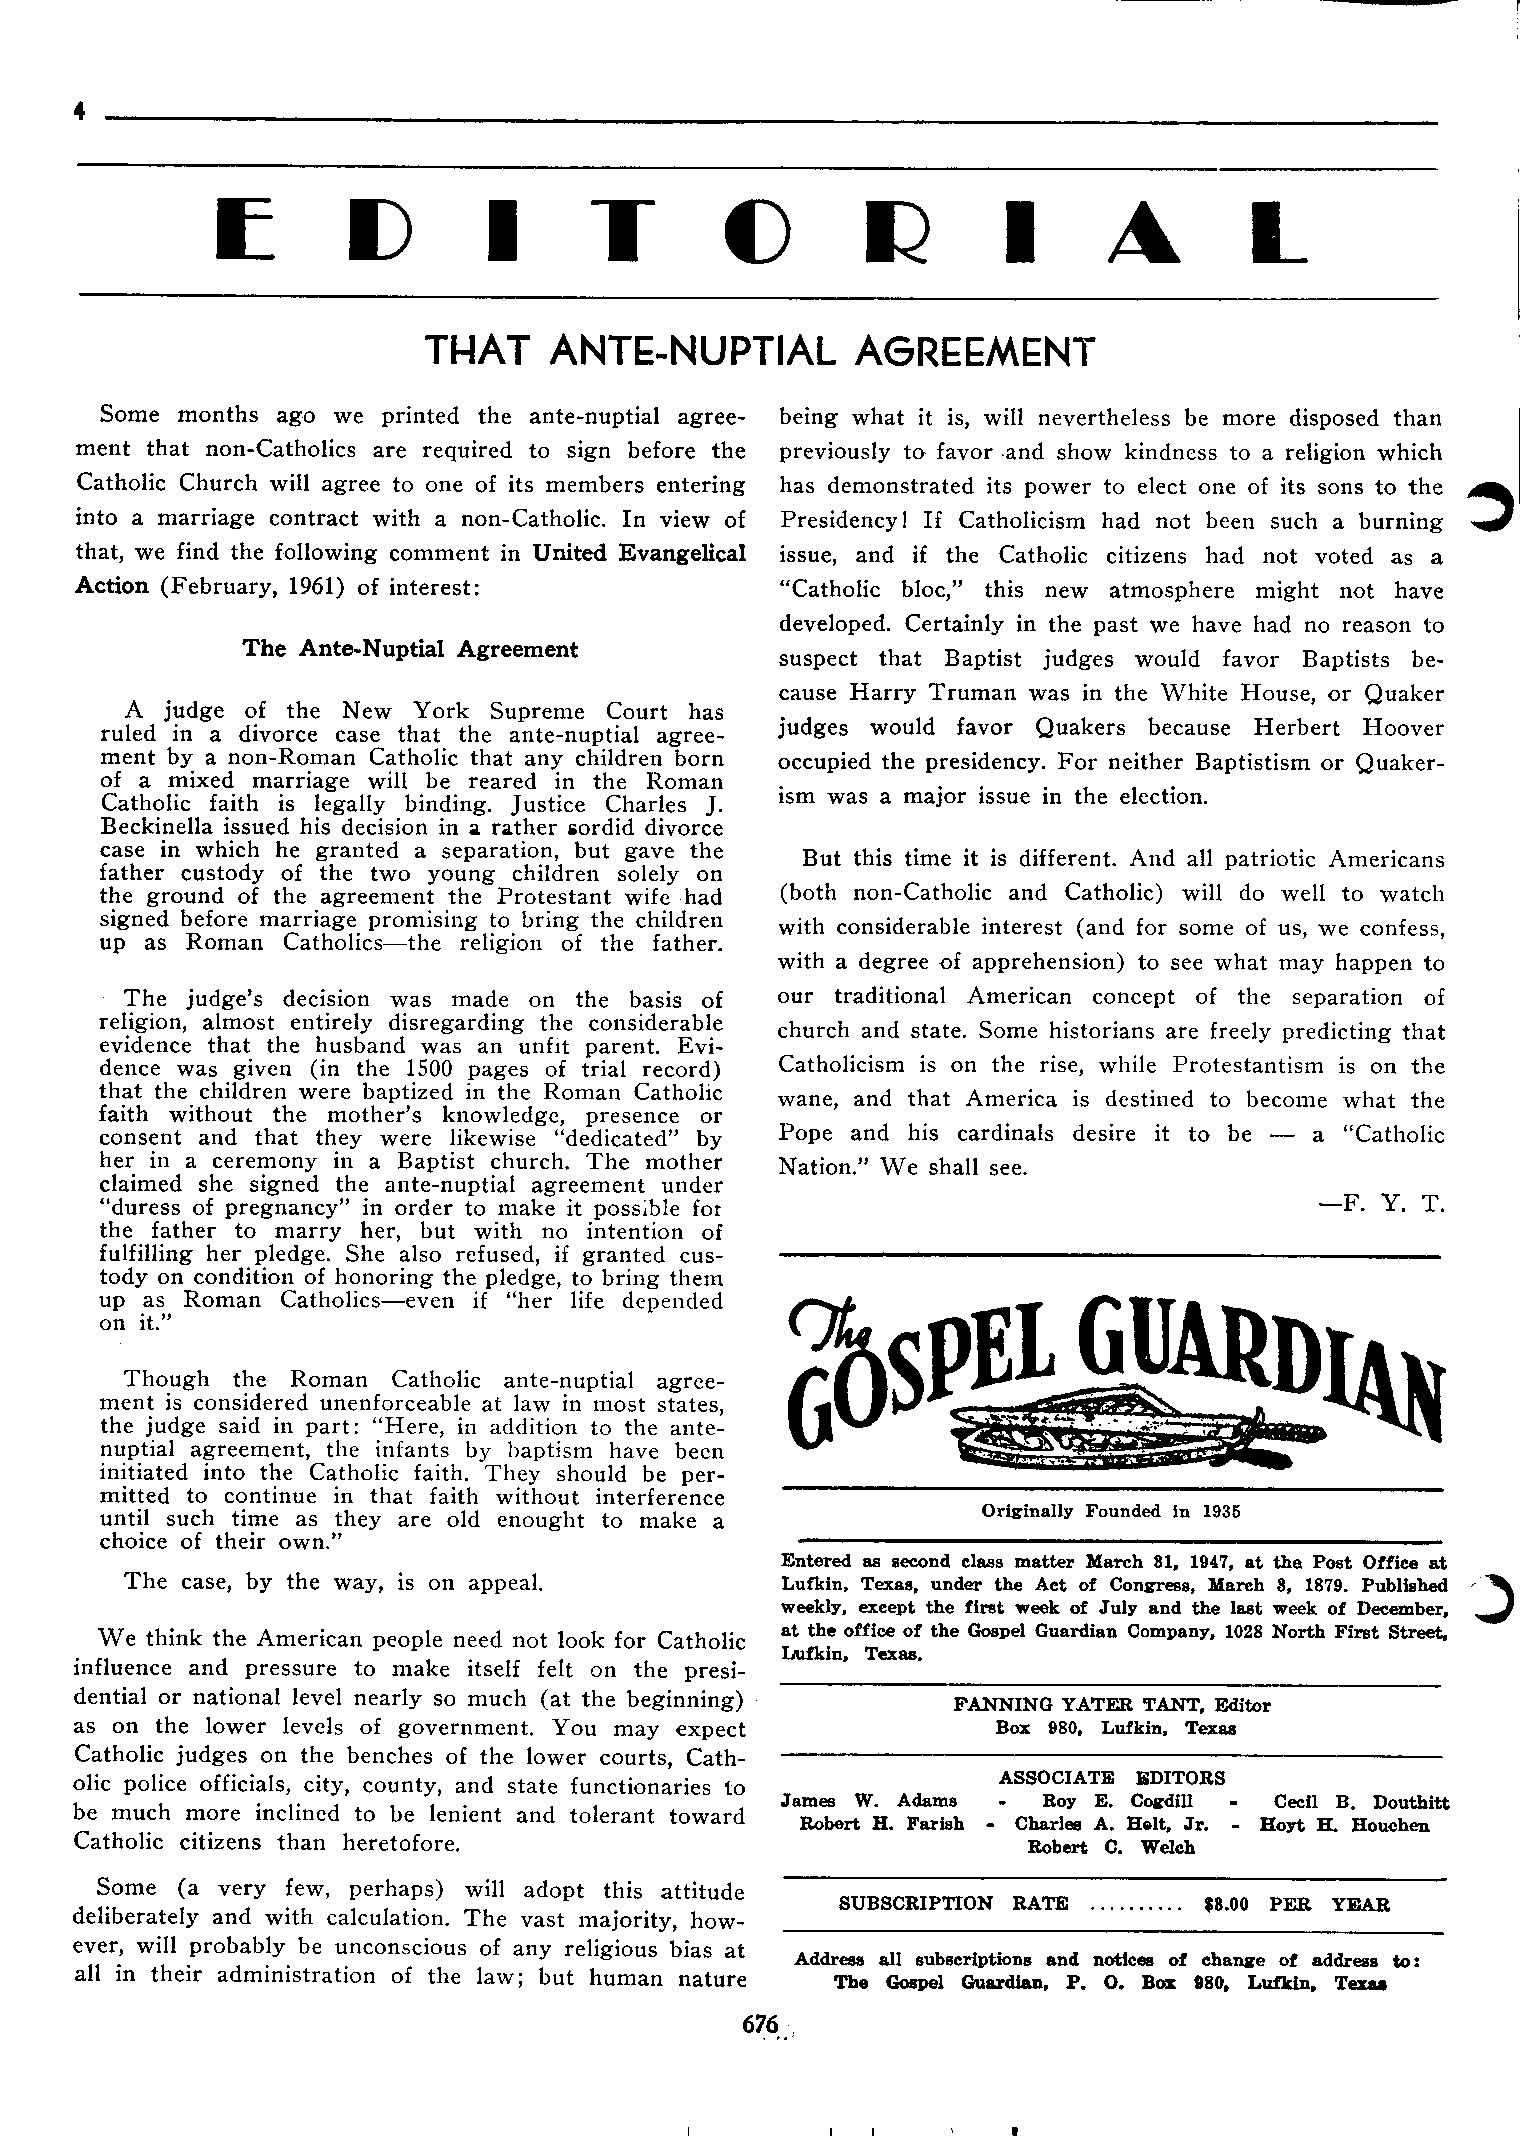 Gospel Guardian Original: Vol.12 No.43 Pg.4